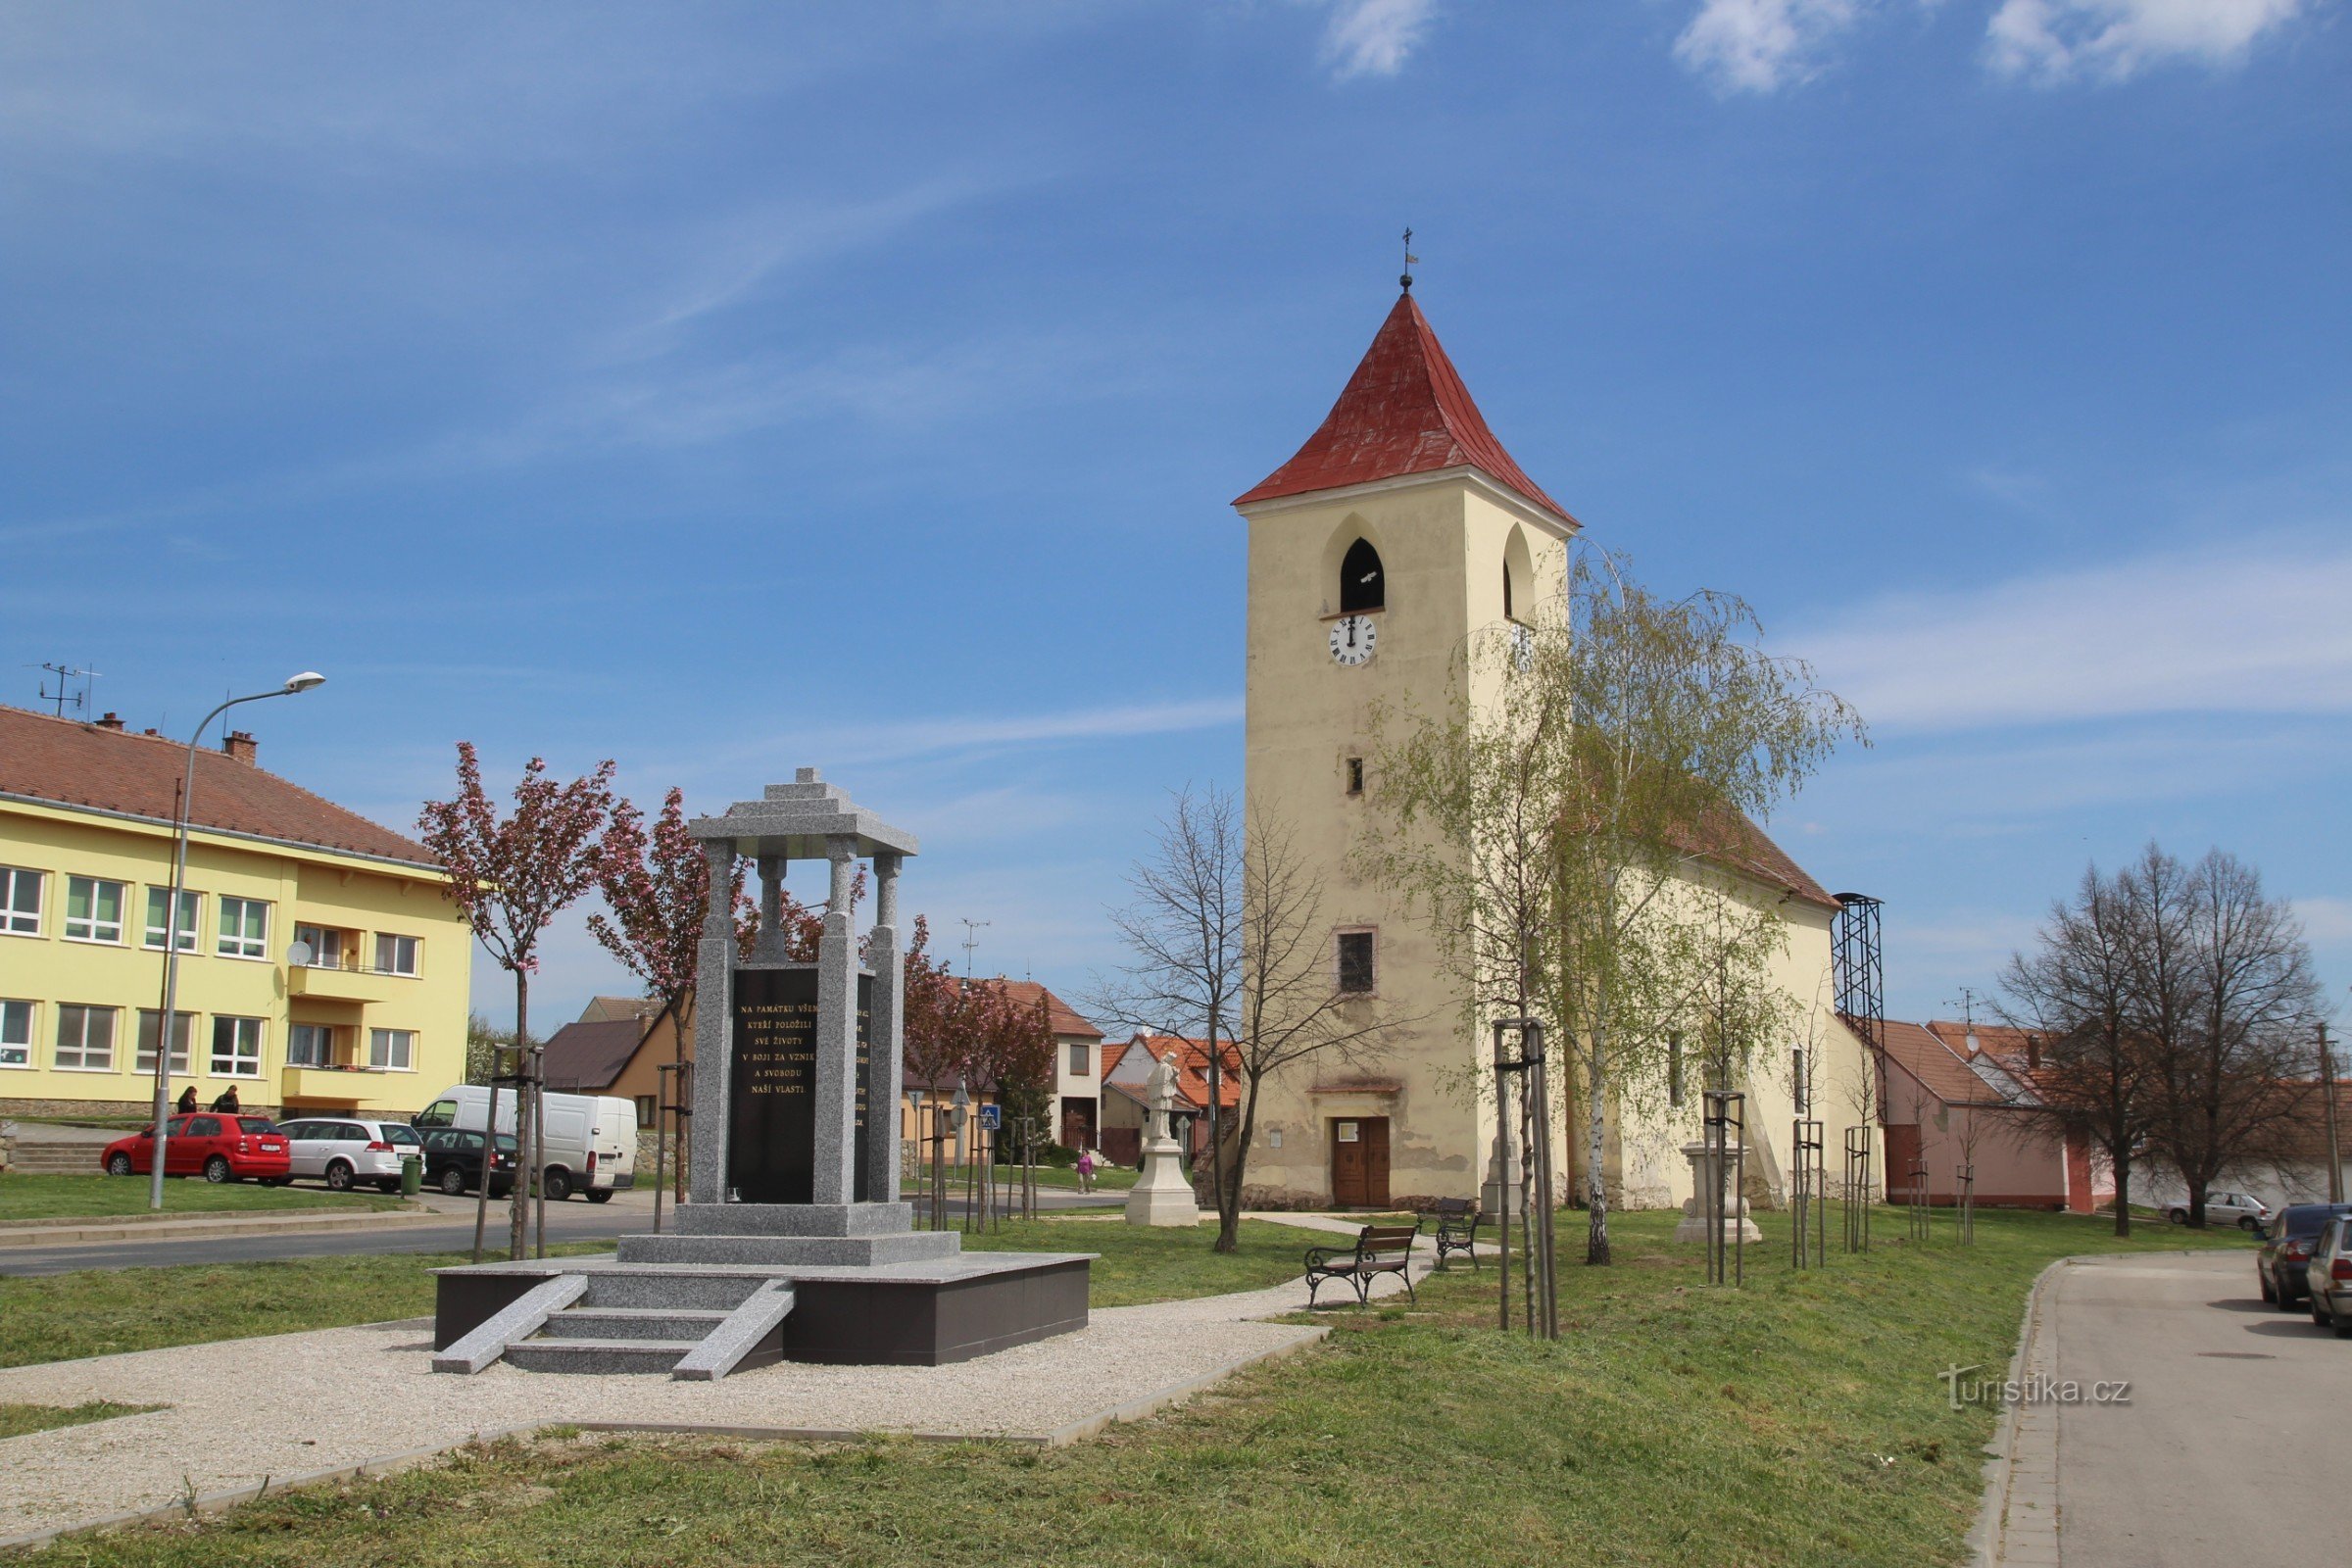 Sattelauflieger Sedlecká mit Kirche St. Herzlich willkommen